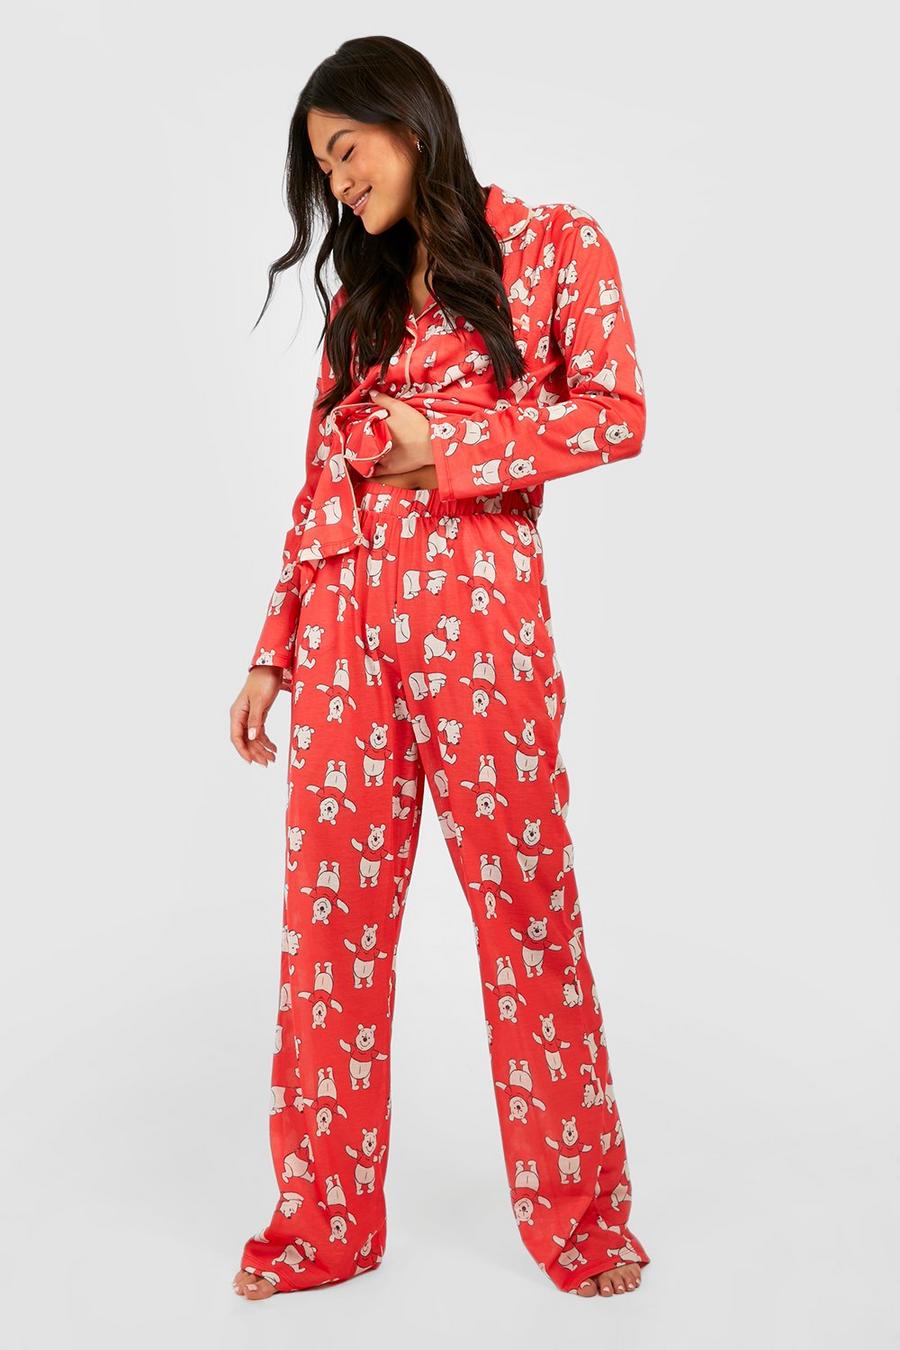 Pijama con estampado Disney de Winnie The Pooh y botones, Red rojo